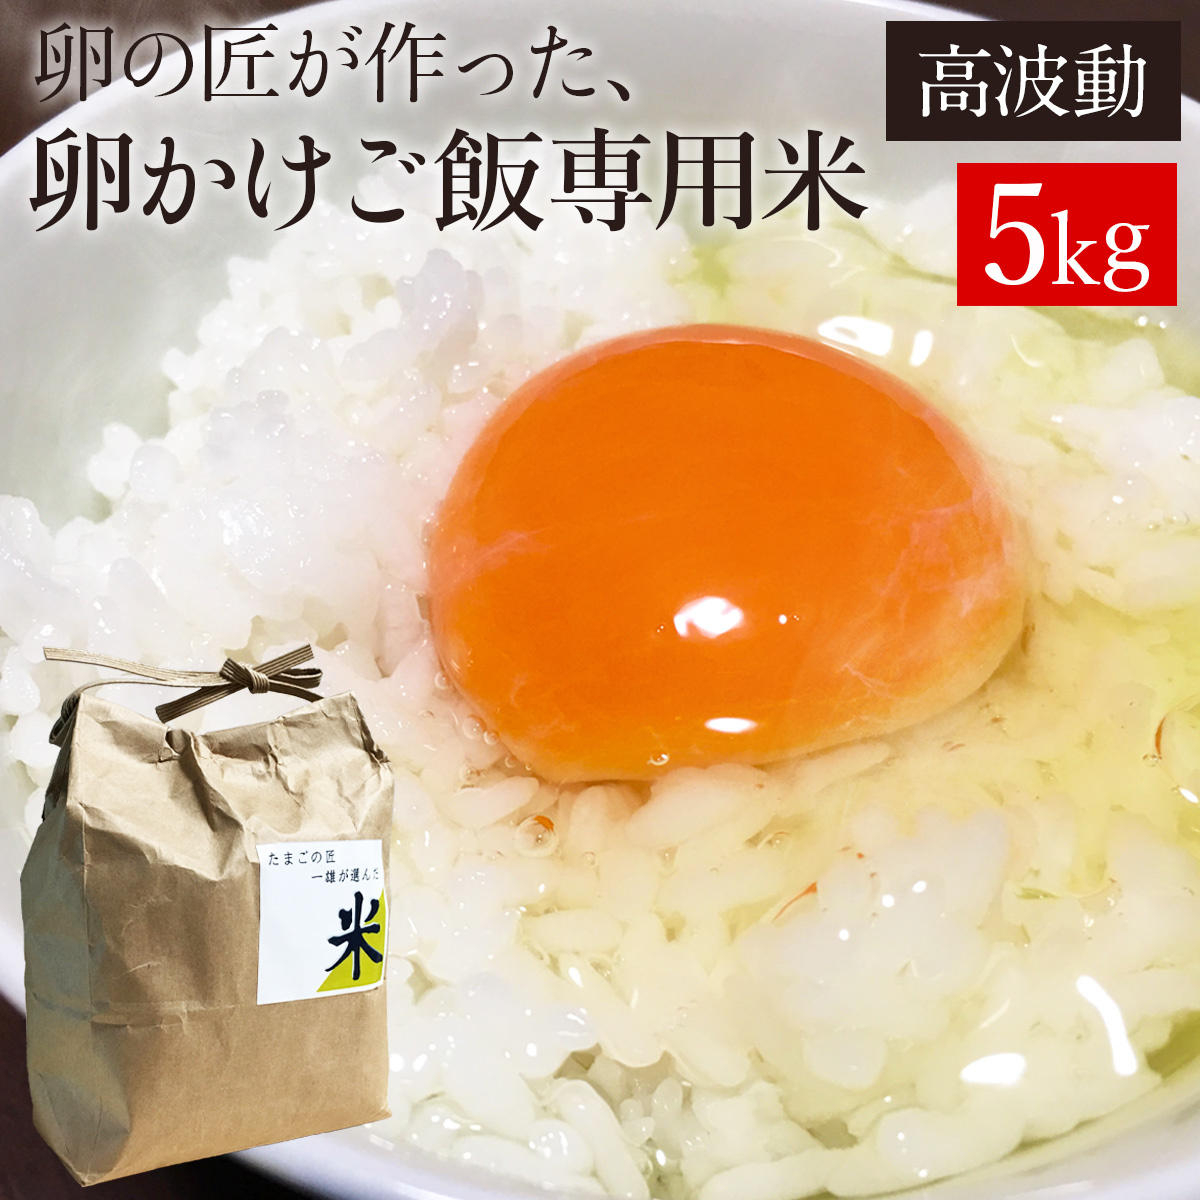 お米 卵かけご飯専用米5kg 高波動米 卵の匠が追求した卵かけご飯に合うお米 青森県産 白米 卵